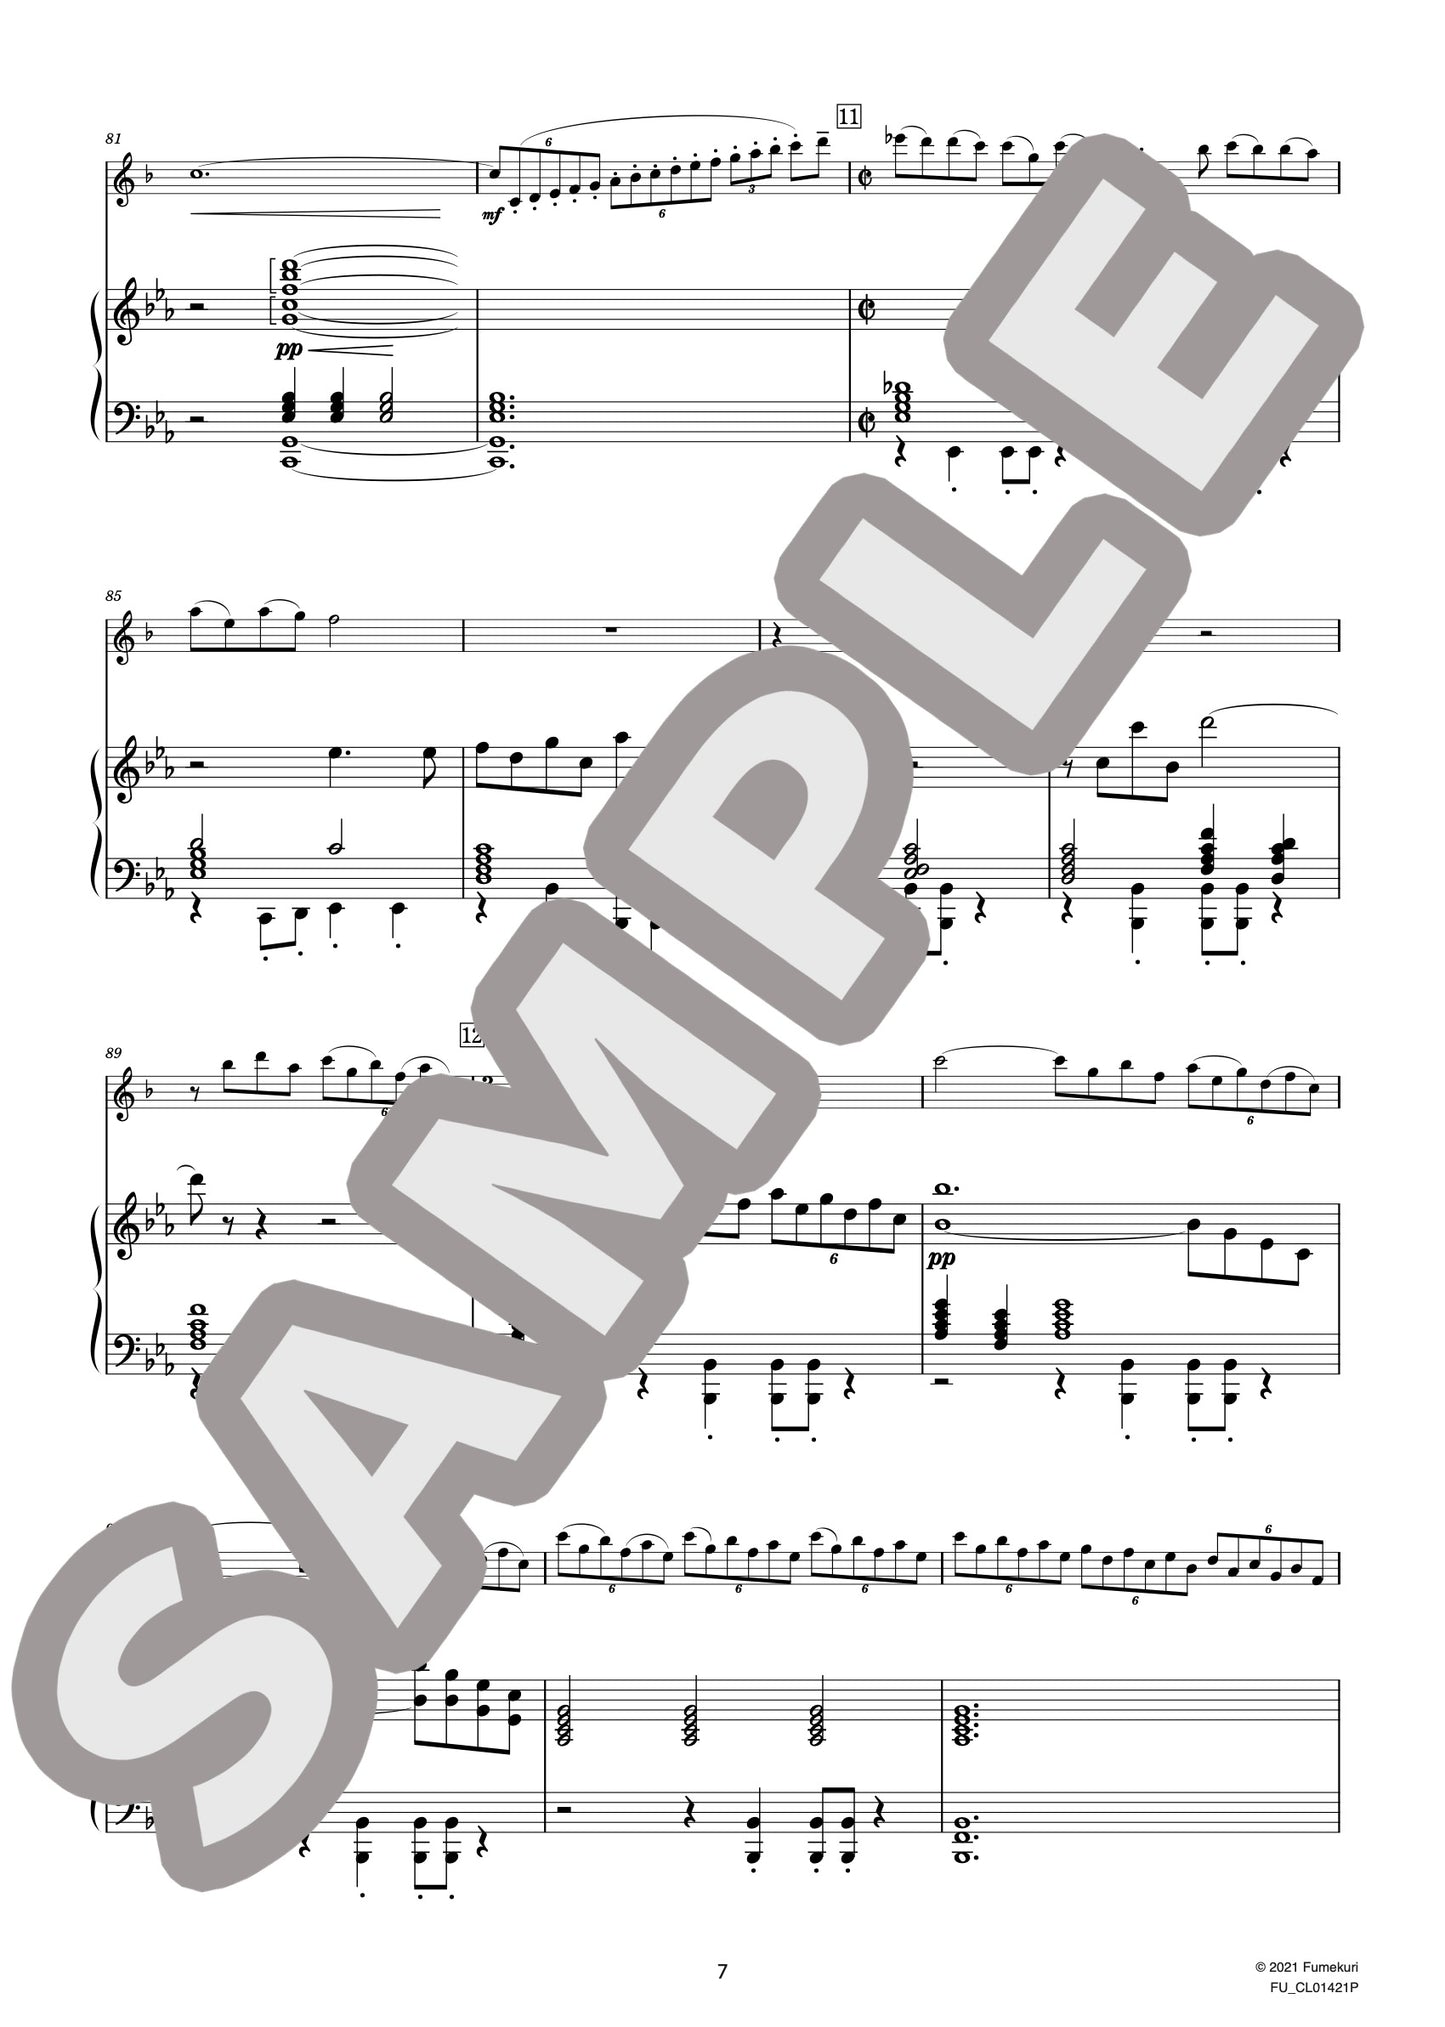 サクソフォンと室内管弦楽のための幻想曲 作品630［サクソフォン（in B-flat）とピアノ編曲版］ 第1楽章（VILLA-LOBOS) / クラシック・オリジナル楽曲【中上級】